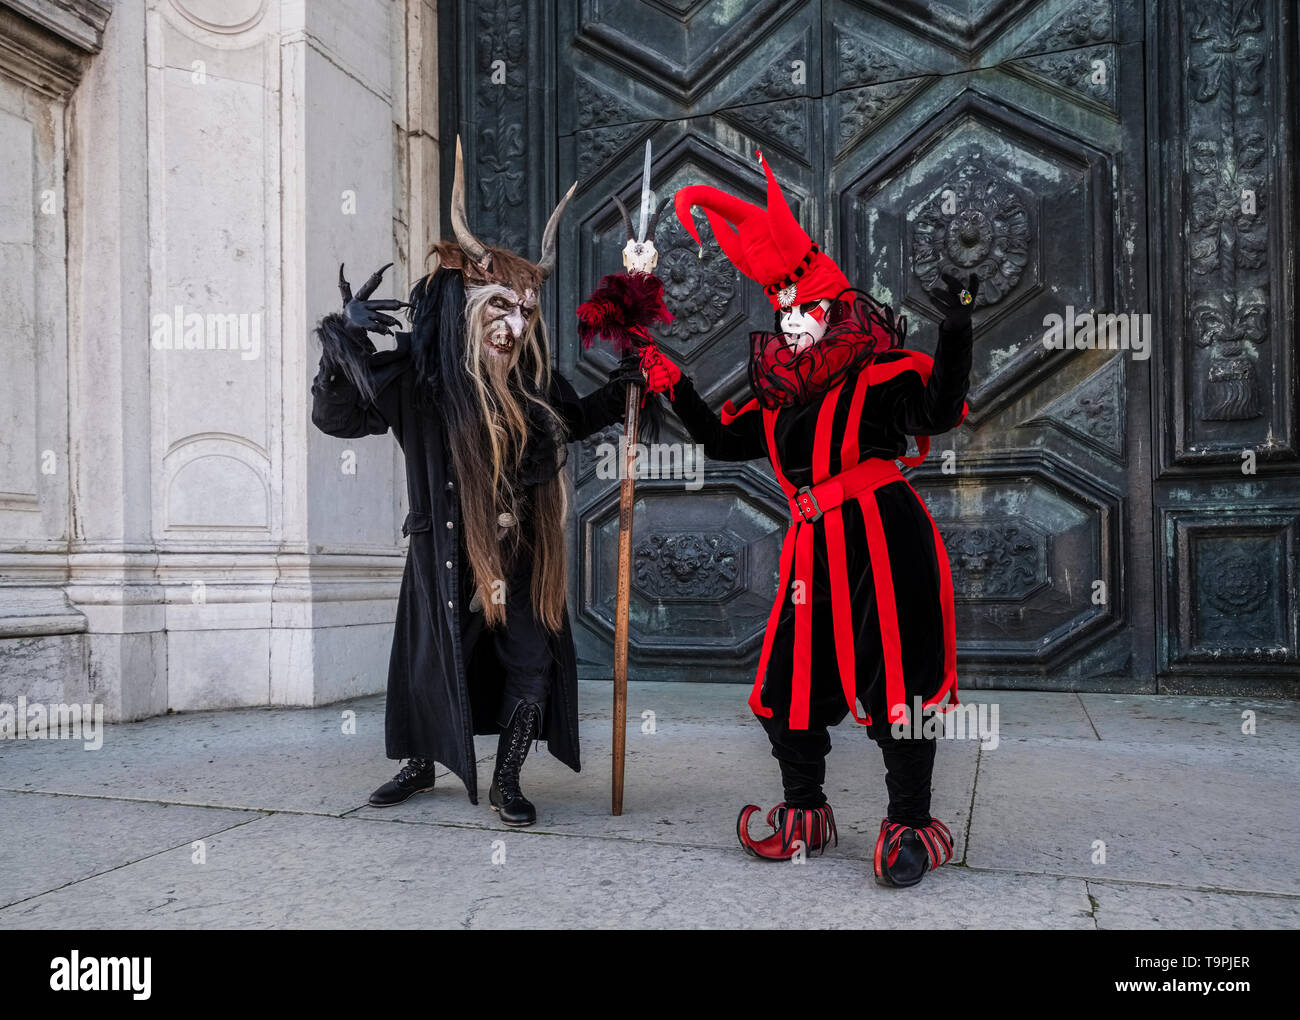 Una persona enmascarada en una espantosa creativos disfraces y otro en un  traje de Arlequín, celebrando el carnaval veneciano Fotografía de stock -  Alamy